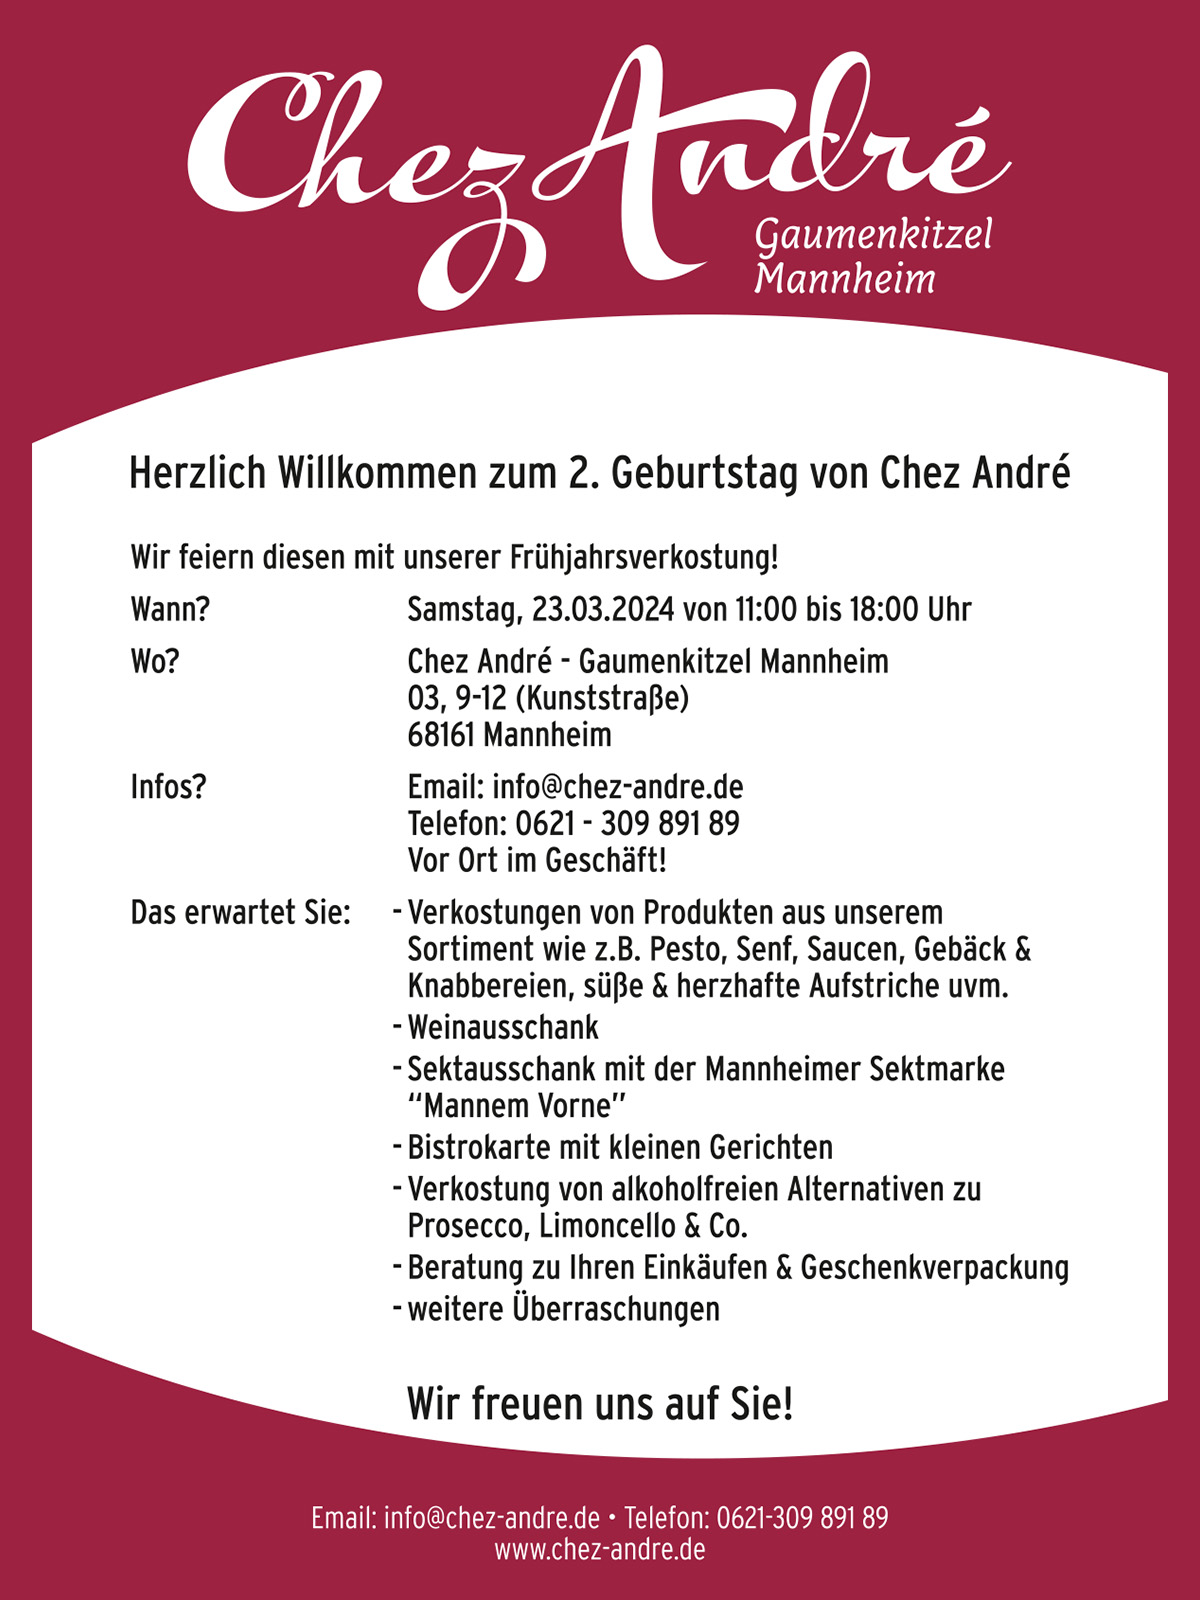 Der Feinkostladen „Chez André“ in Mannheim begeht im März seinen 2. Geburtstag und feiert zusammen mit Ihnen bei einer Frühjahrsverkostung am 23.03.2024 in Mannheim